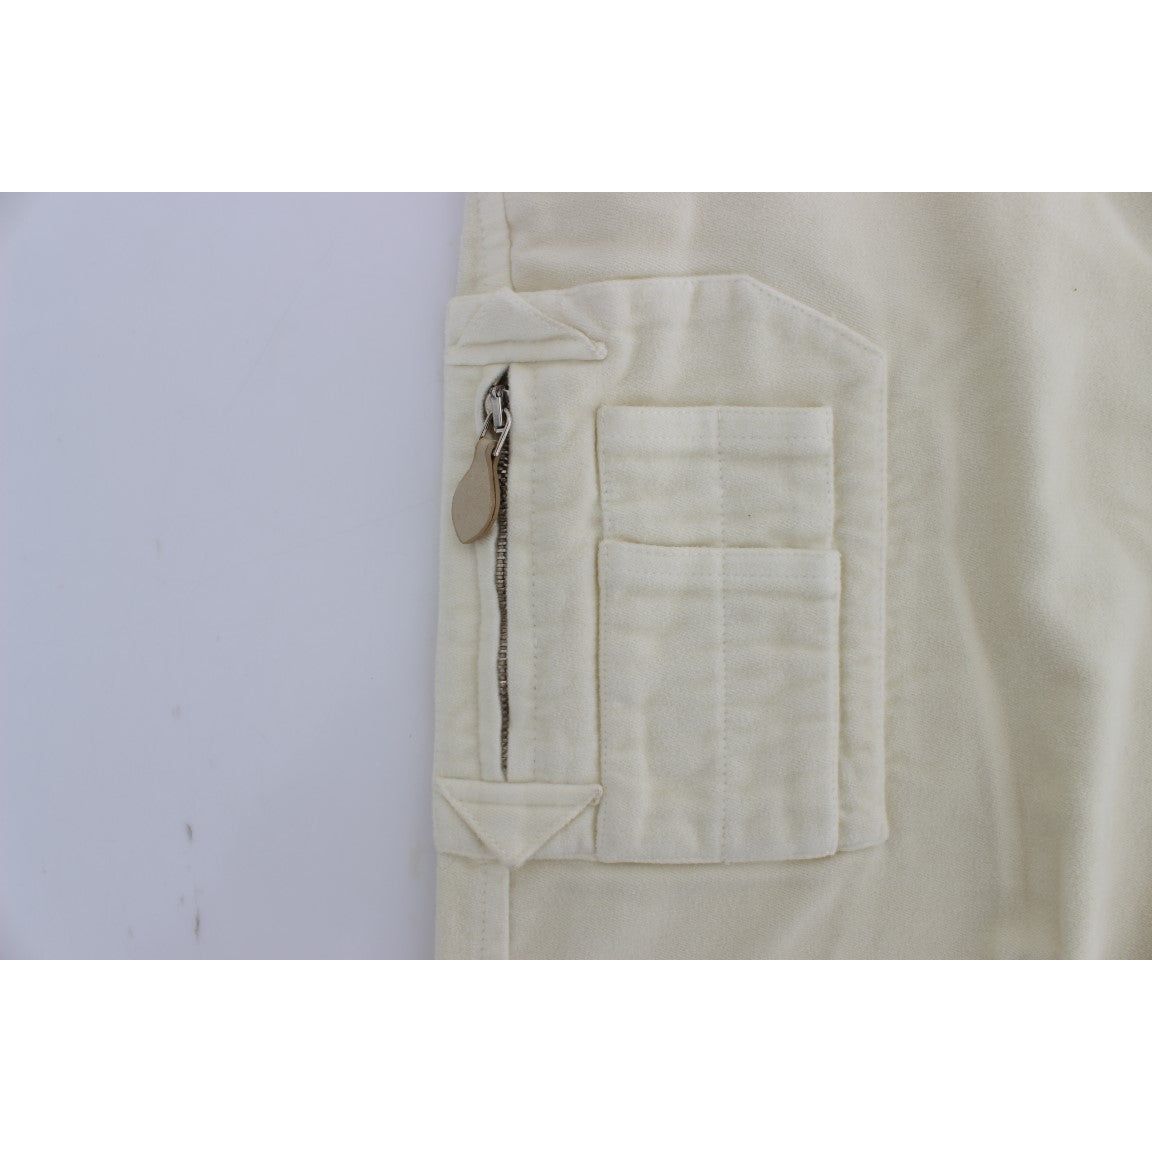 Ermanno Scervino Beige Capri Cropped Chic Pants Jeans & Pants beige-cotton-capri-cropped-cargo-pants